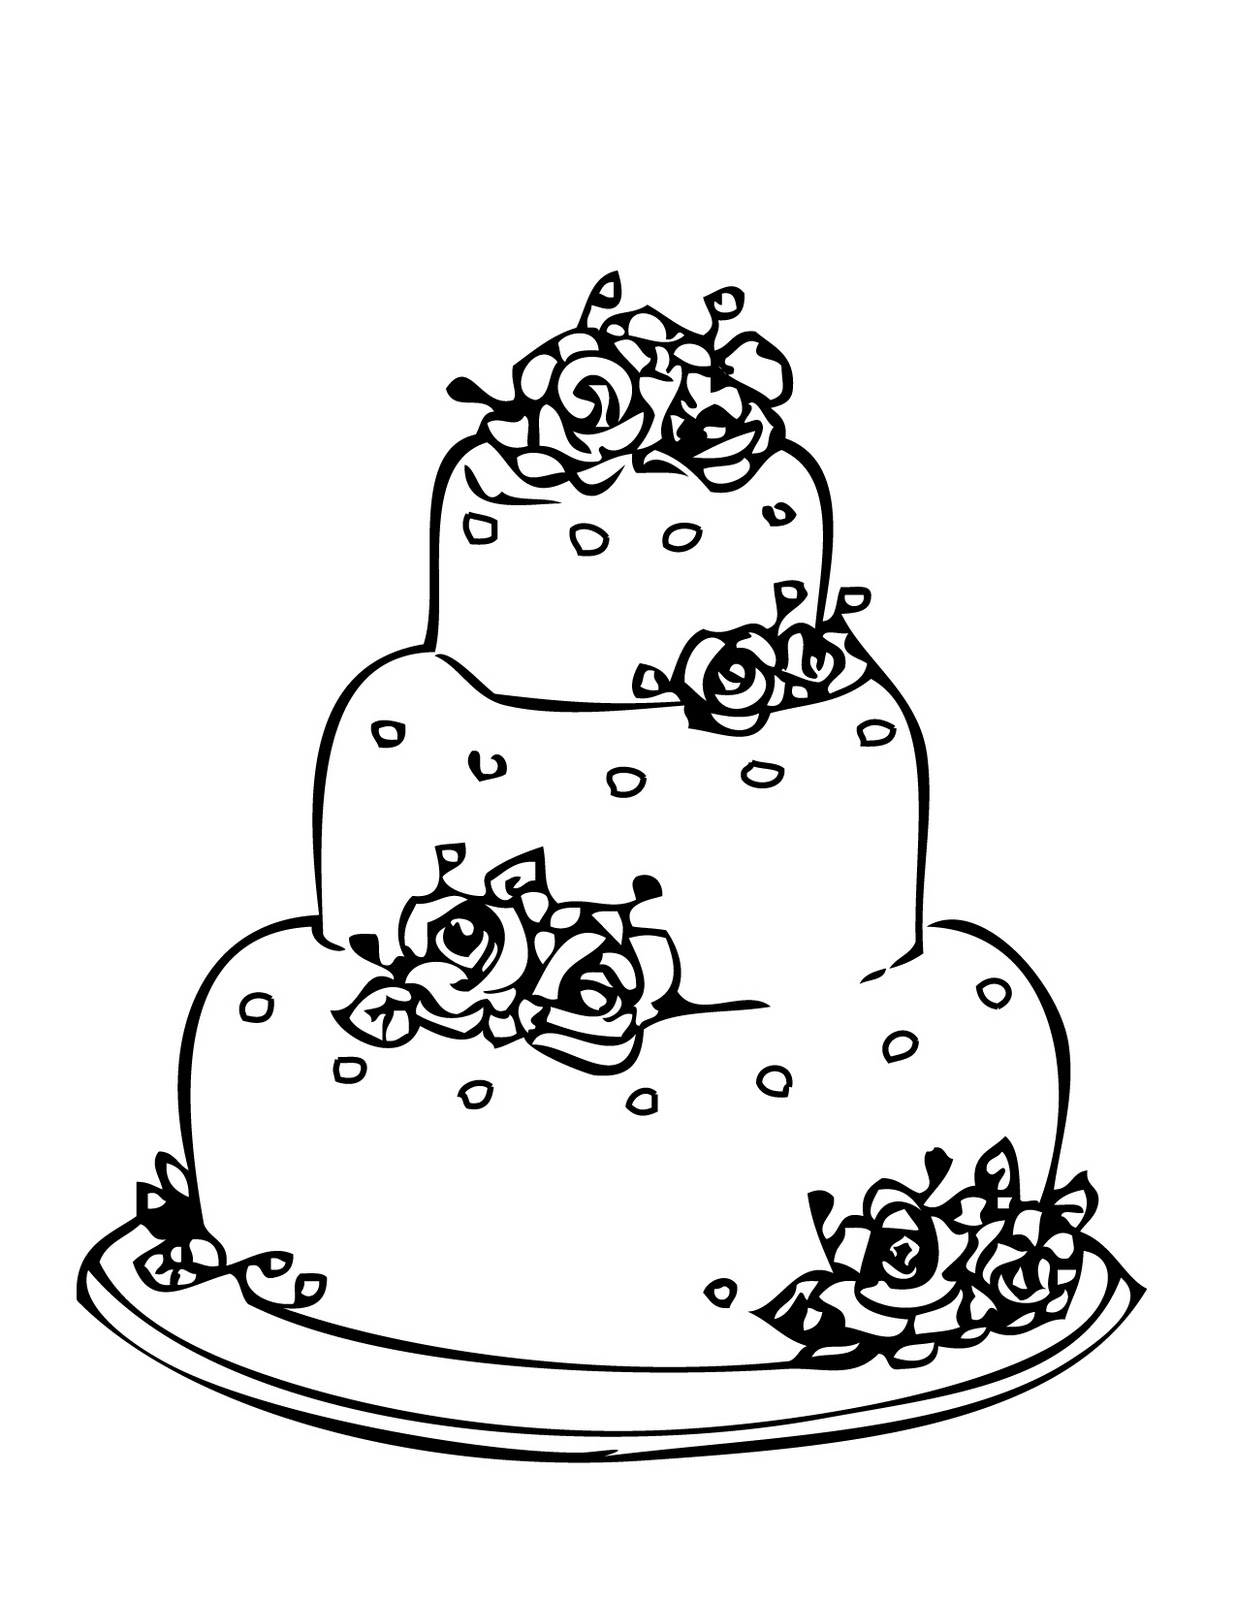 The Simple Cake: Curious George Birthday Cake